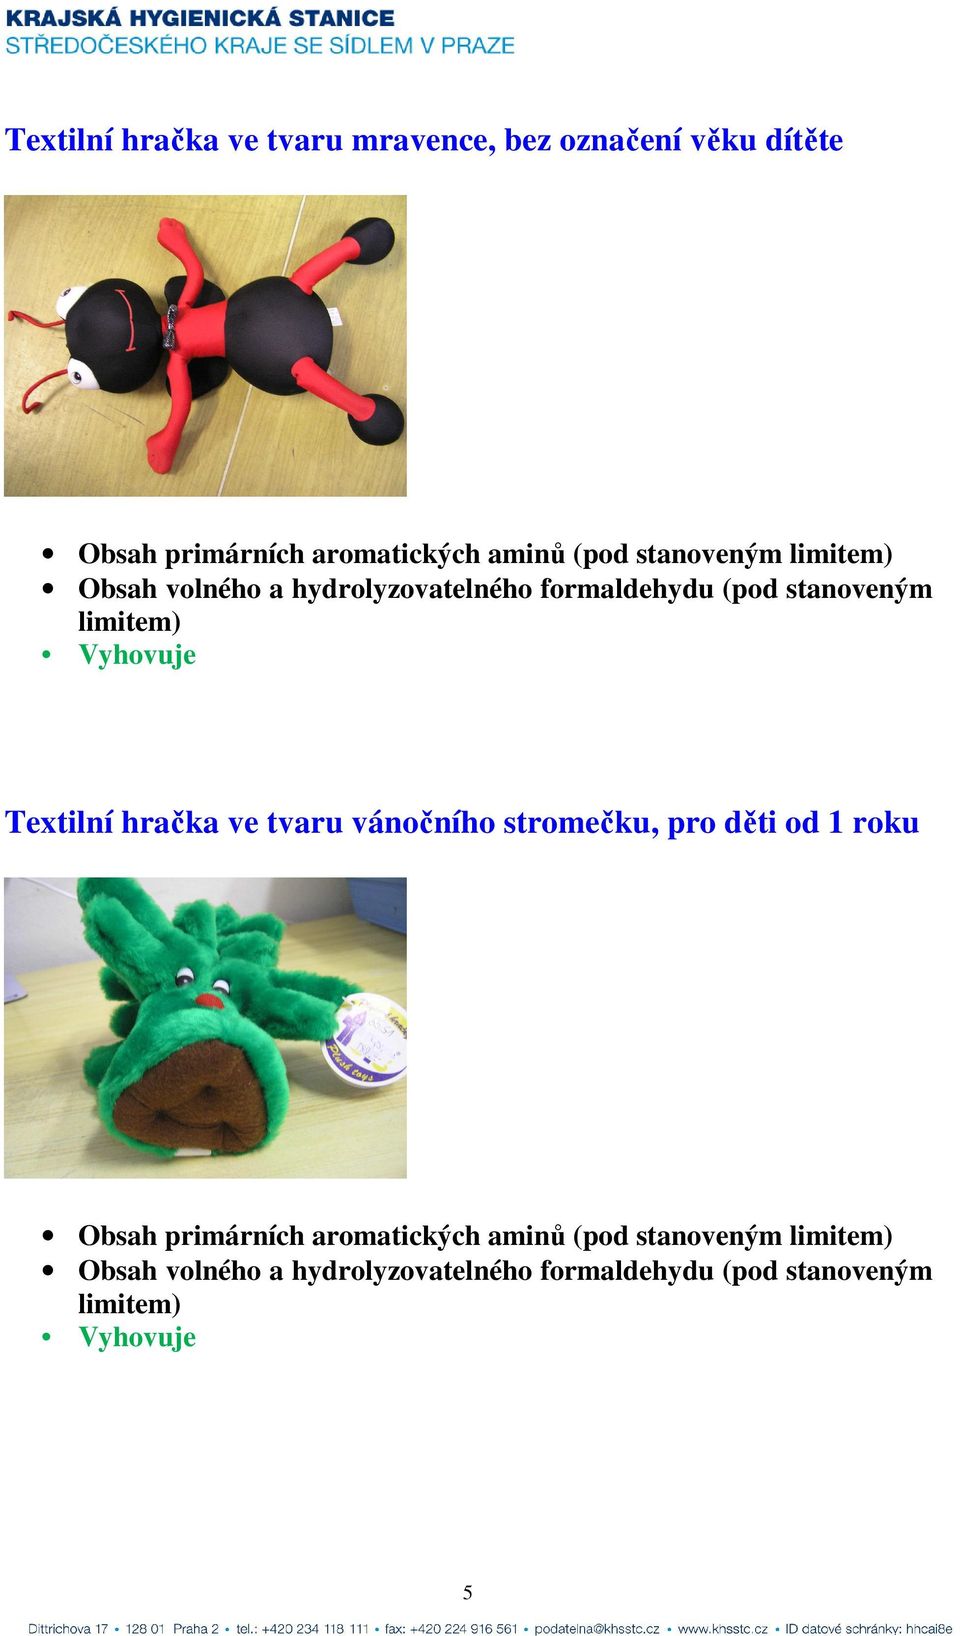 Textilní hračka ve tvaru vánočního stromečku, pro děti od 1 roku Obsah primárních aromatických